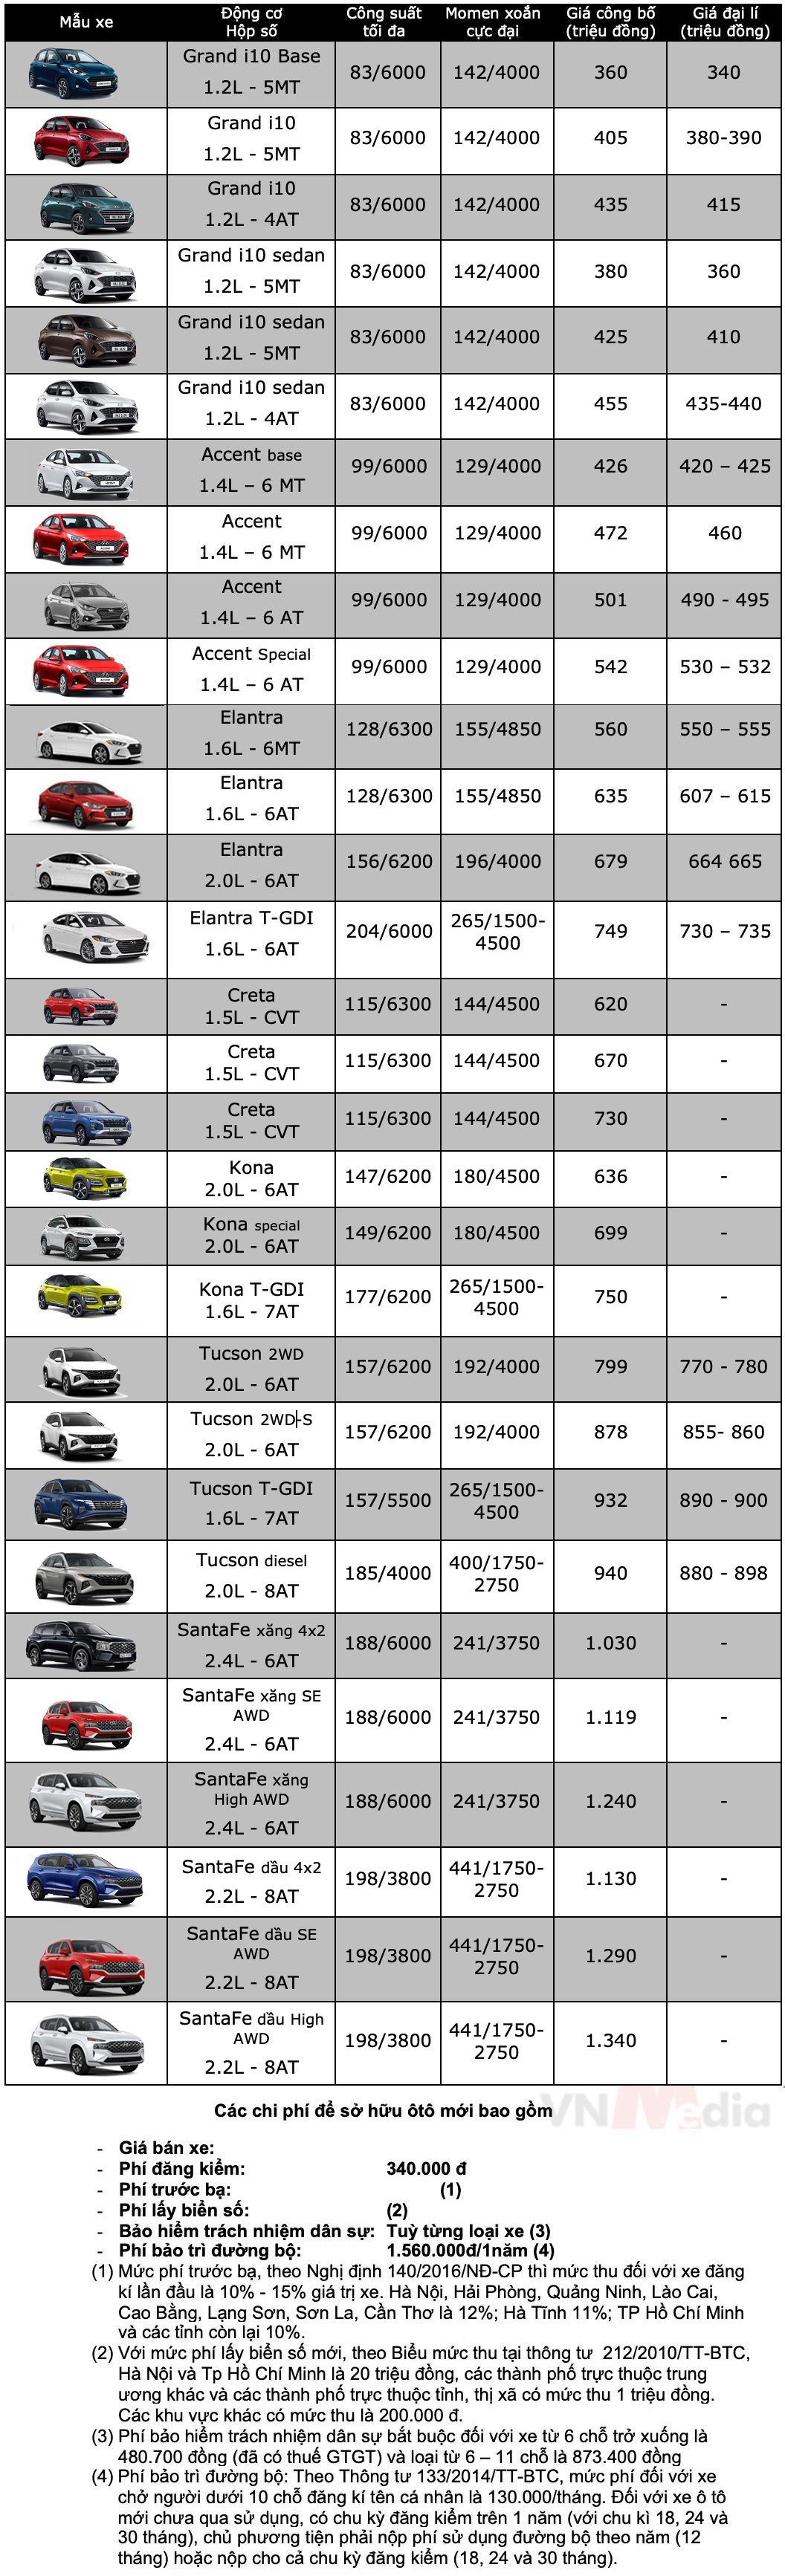 Bảng giá xe Hyundai tháng 8: Hyundai Grand i10 giảm giá 10 triệu đồng - ảnh 2